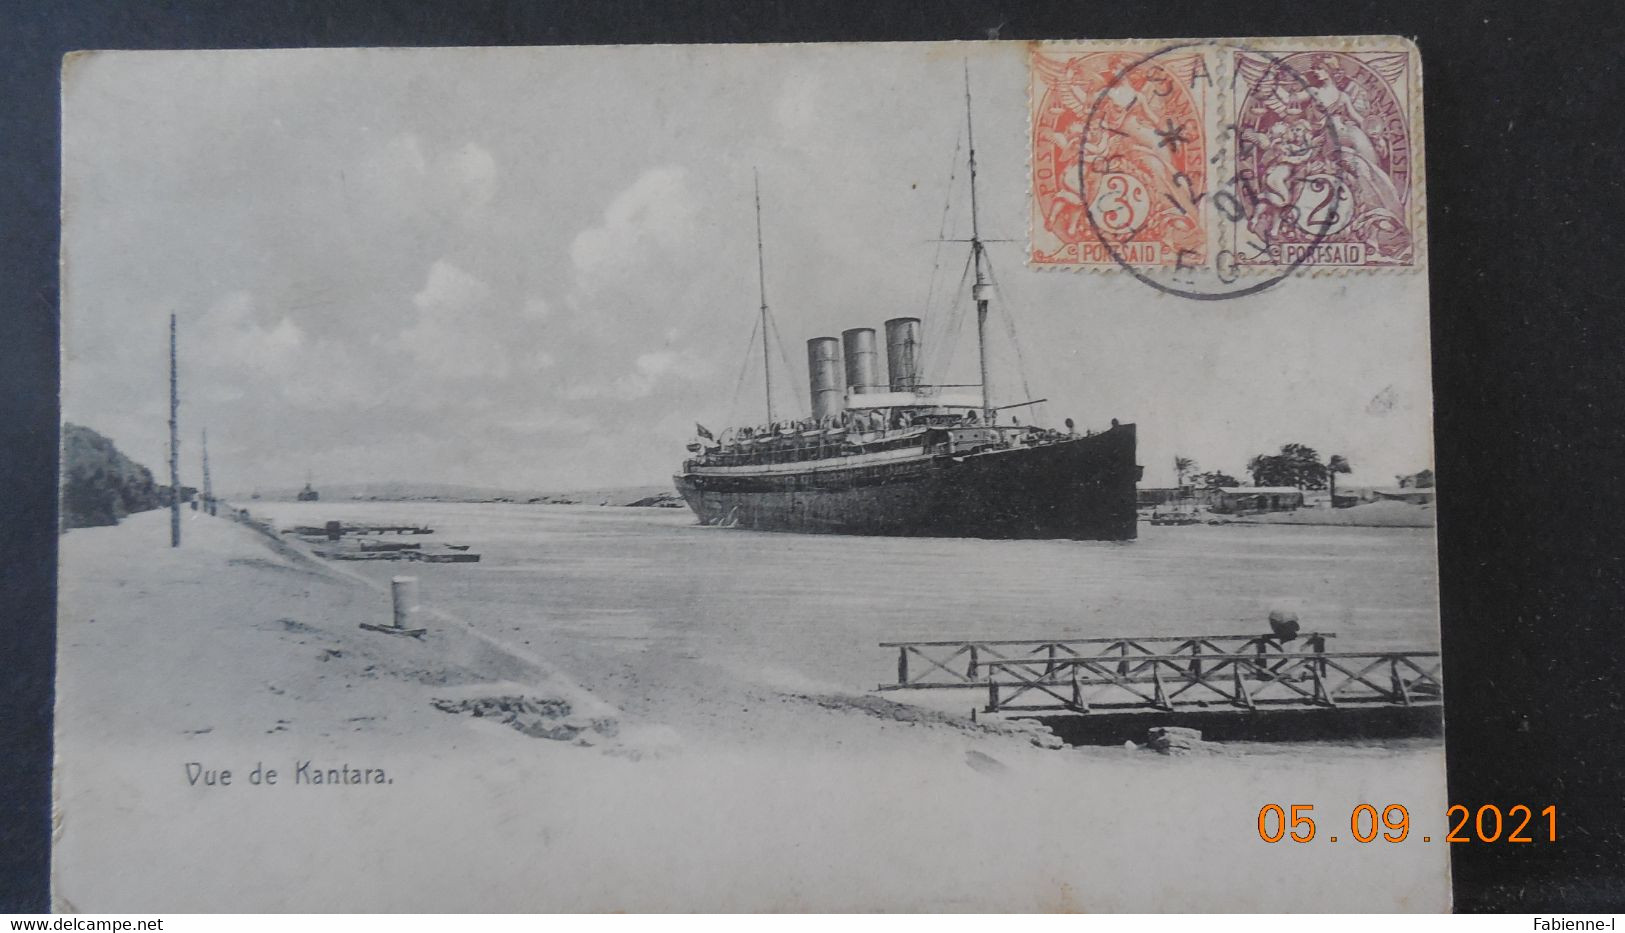 Carte Postale De 1907  à Destination De France Avec Cachet Et Timbres De Port Saïd - Briefe U. Dokumente